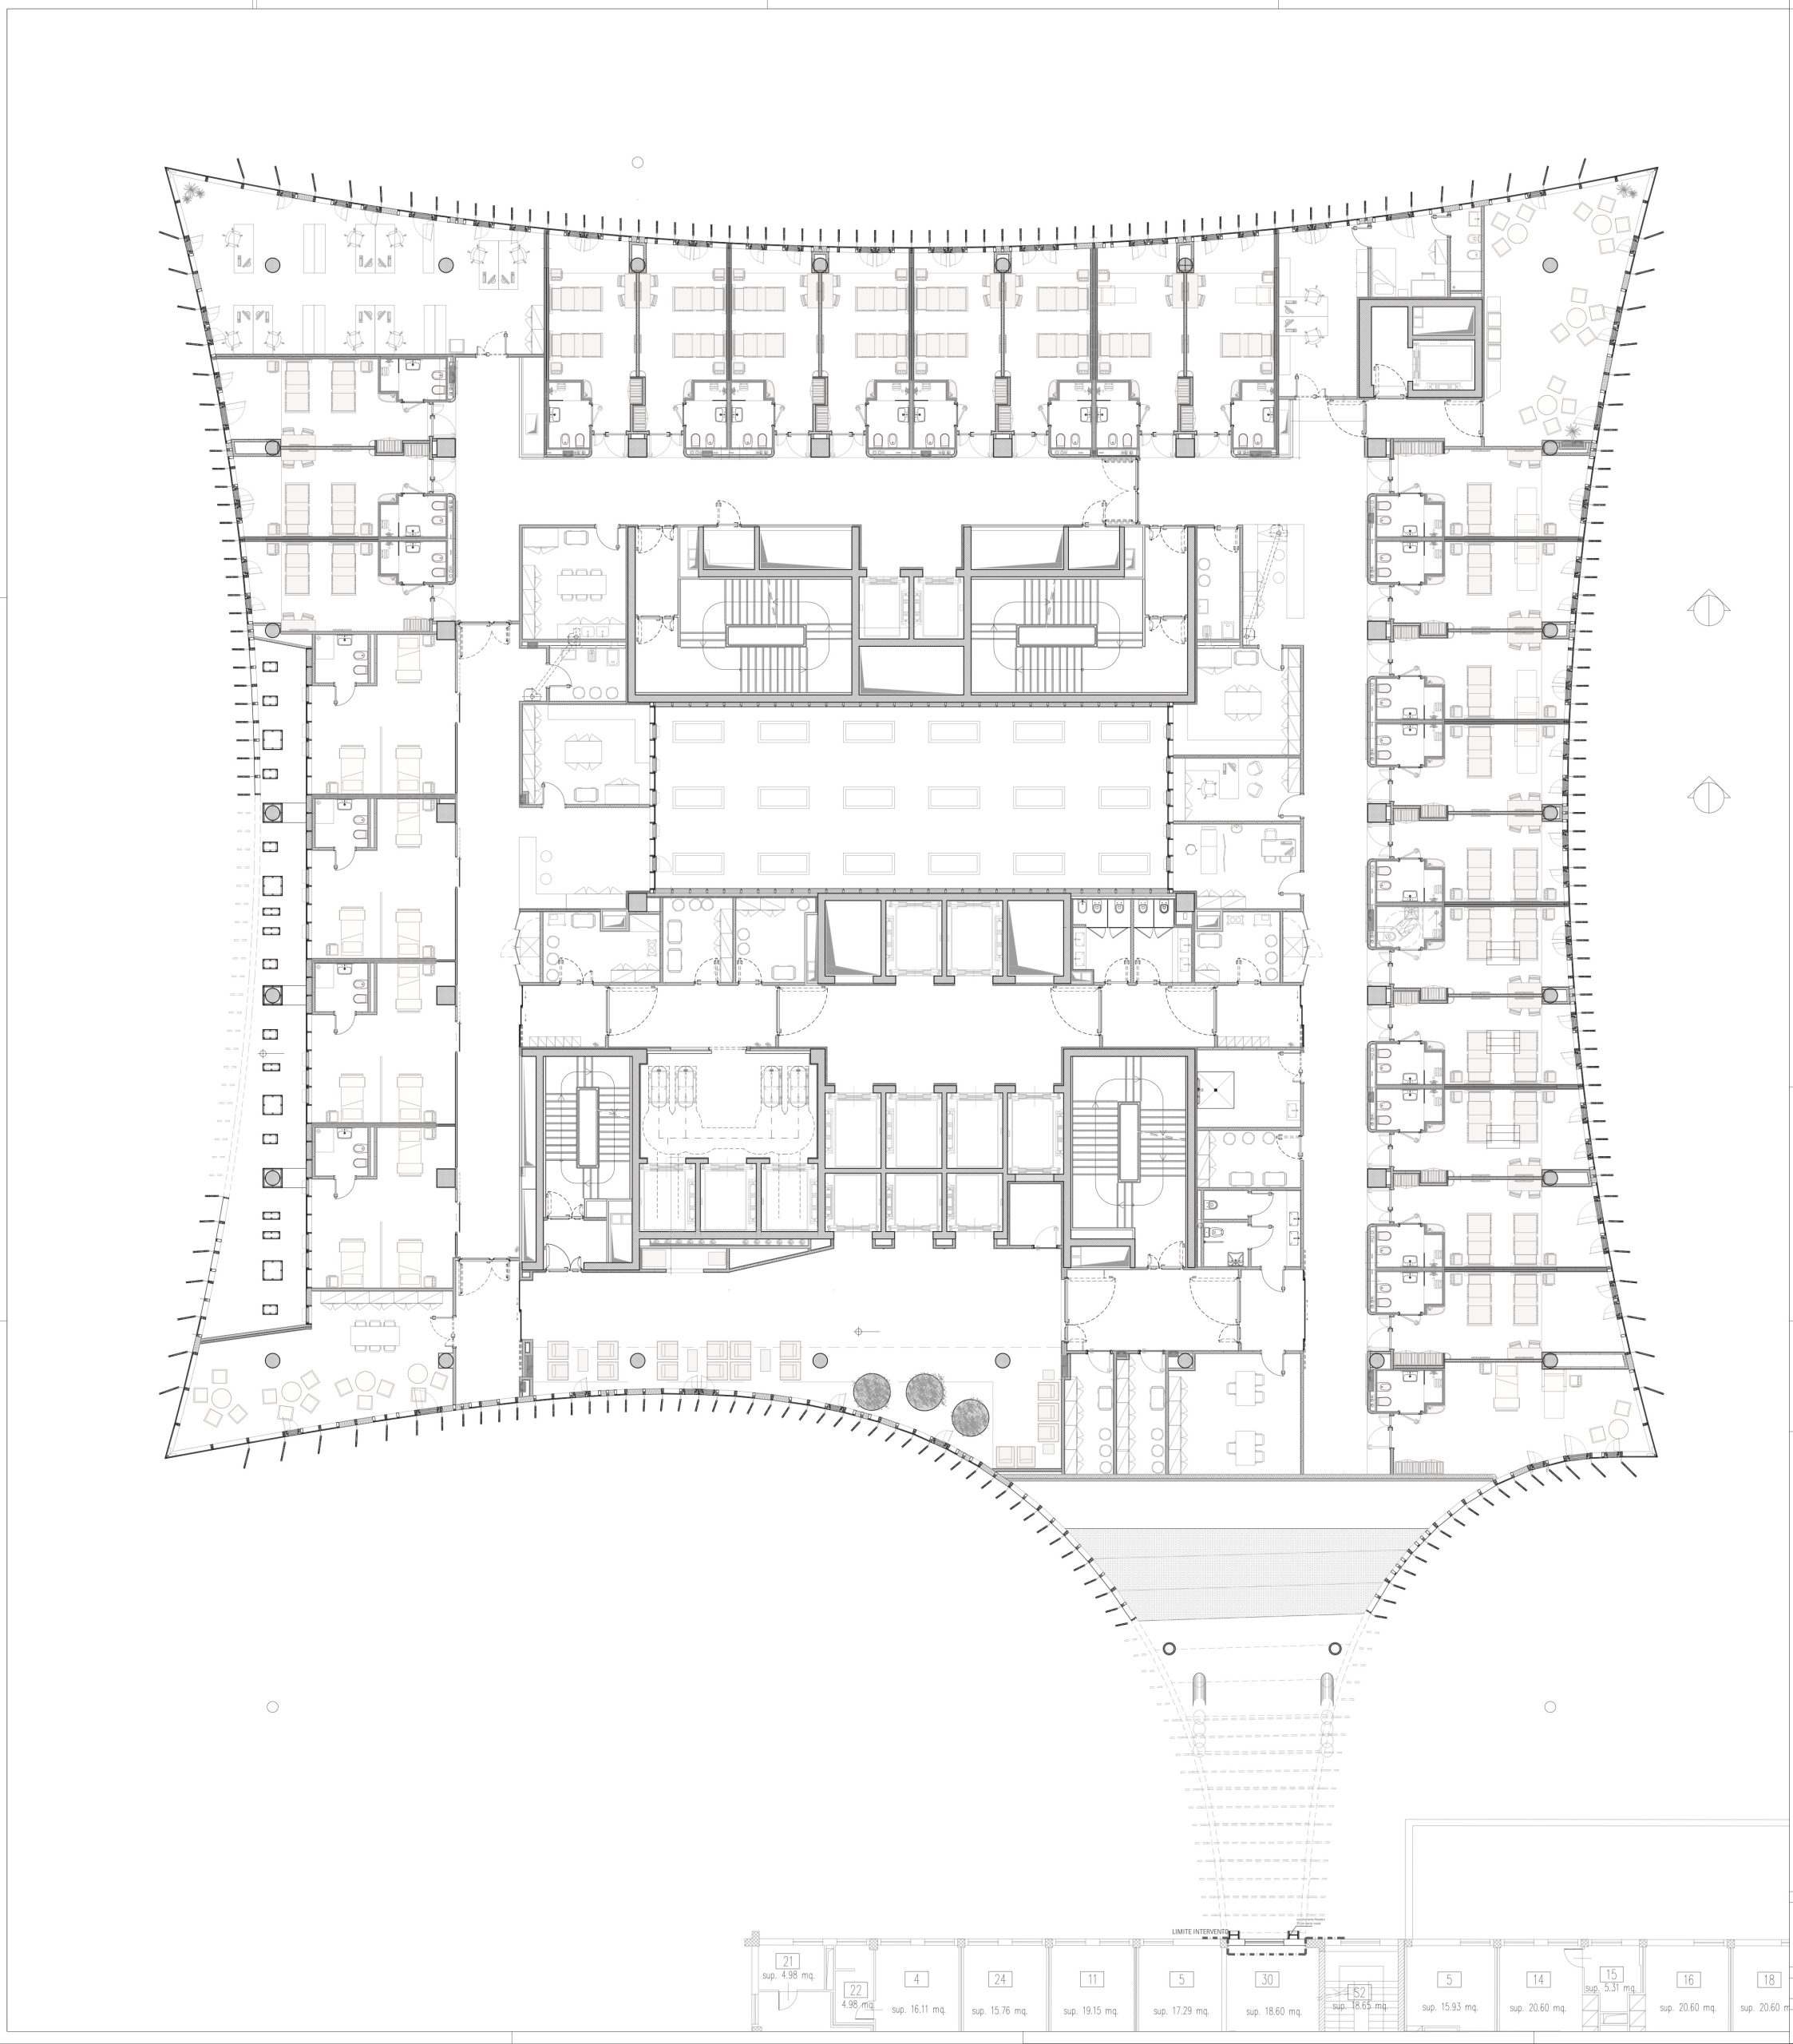 Grundriss 1. Obergeschoss, Mario Cucinella Architects, Ospedale San Raffaele, Mailand, Zeichnung: Mario Cucinella Architects